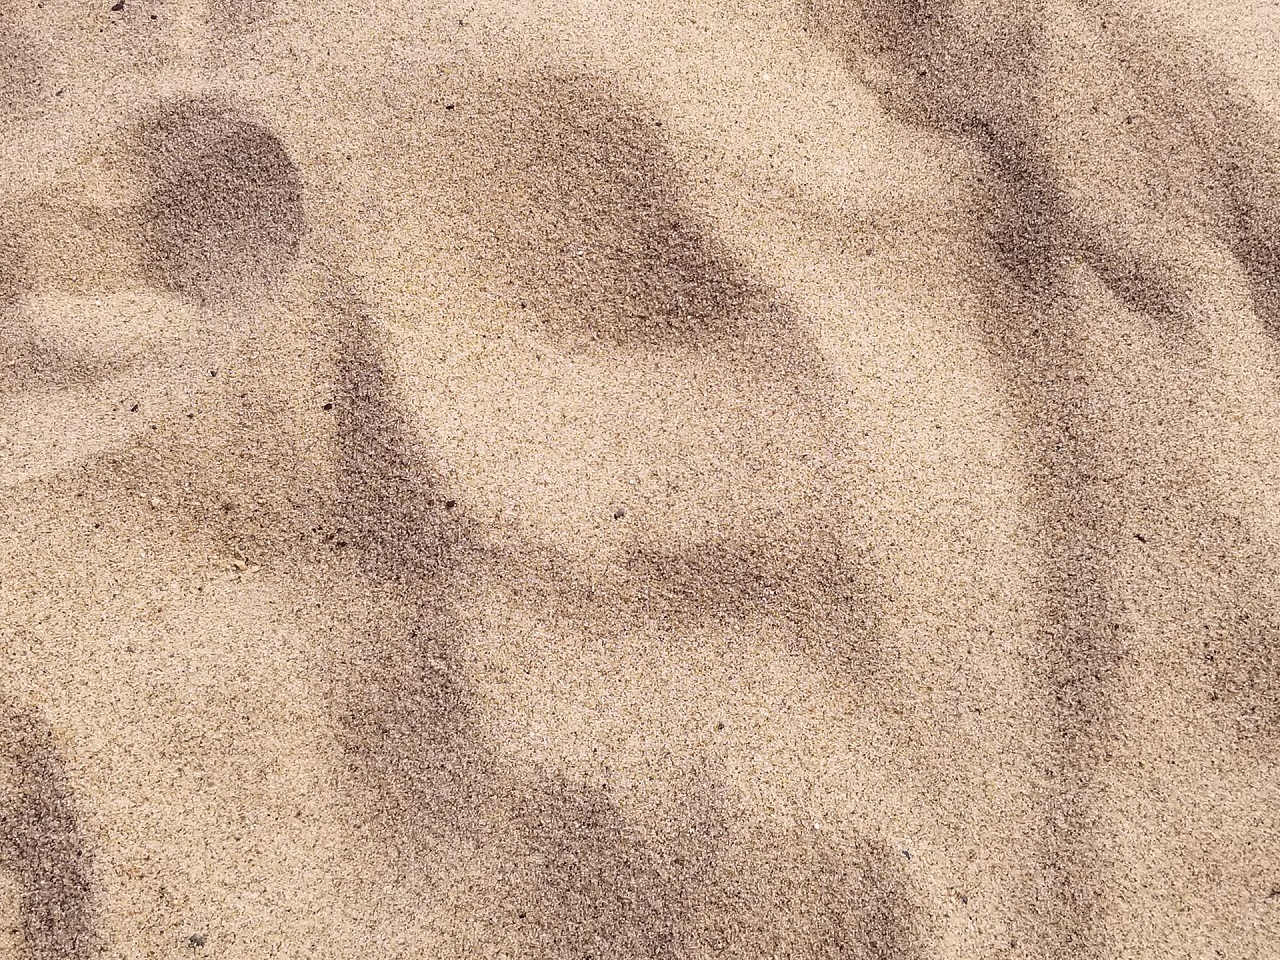 Odwadnianie piasku – w jakim celu się je wykonuje?